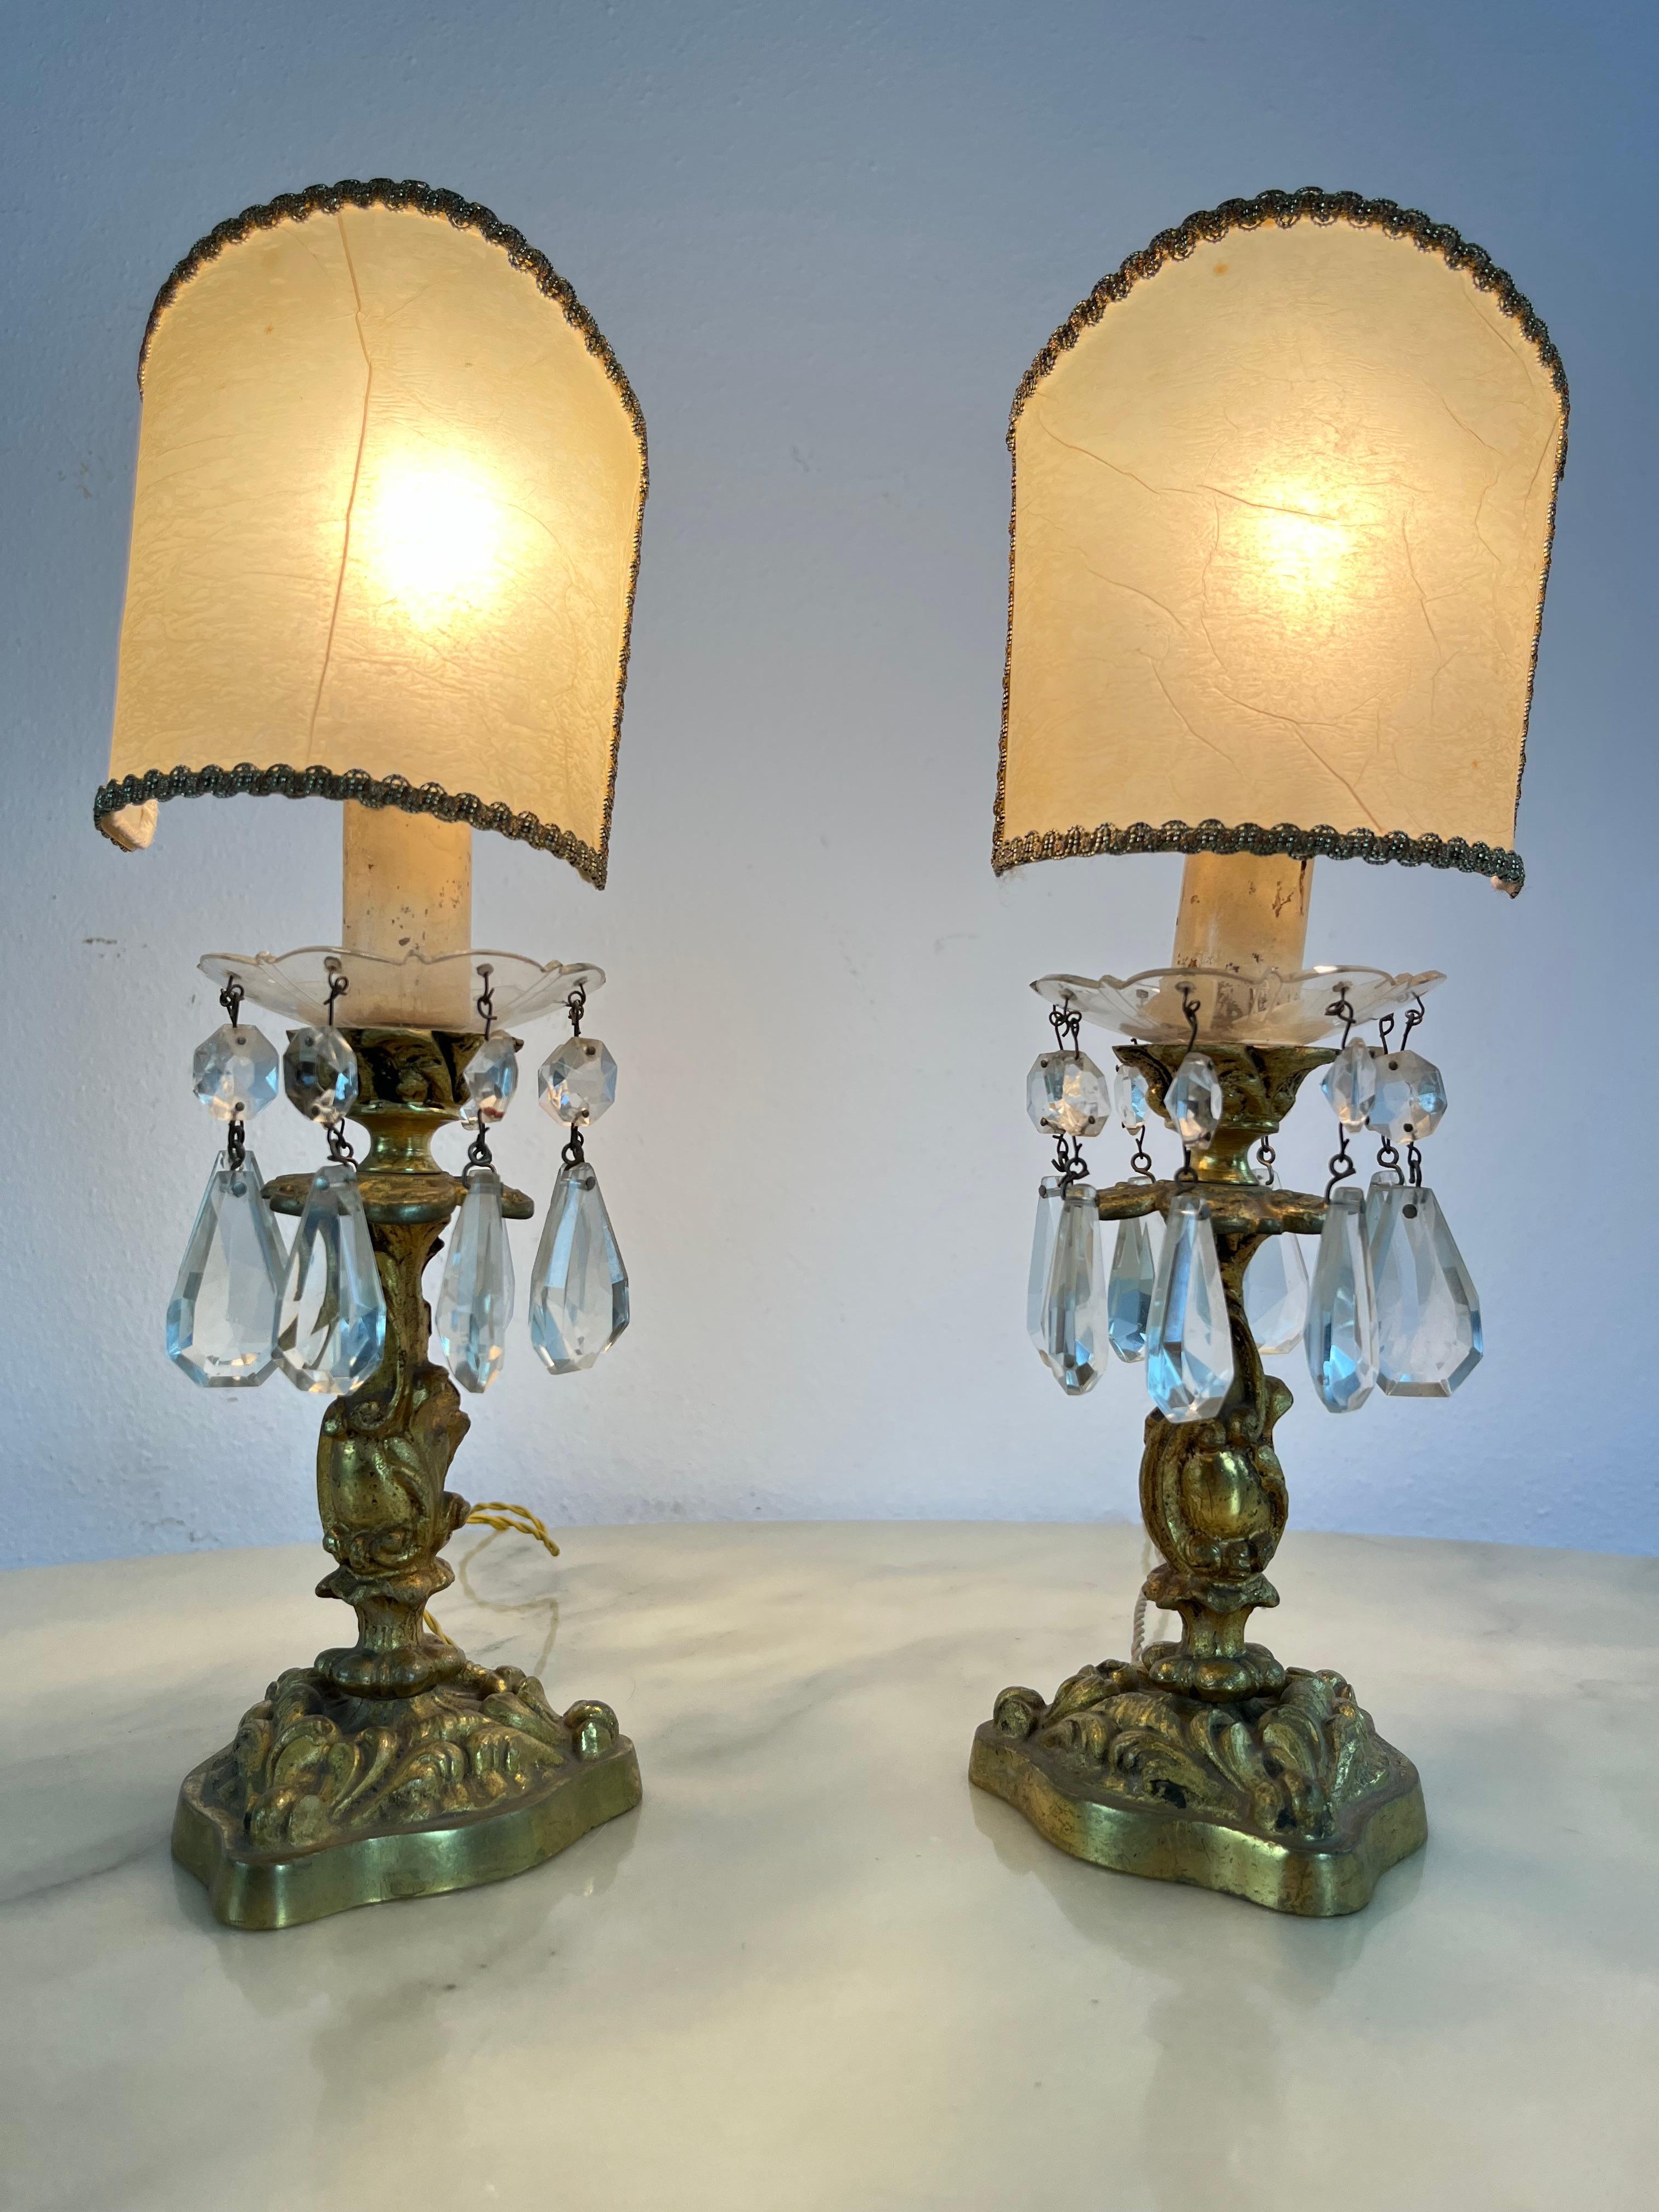 Ensemble de 2 lampes de chevet en laiton et cristal du milieu du siècle Attribué à la Maison Bagués.
Années 1950, France.
Intacte et fonctionnelle, en bon état avec de petits signes de vieillissement. Lampe E14.

La Maison Baguès est une maison de